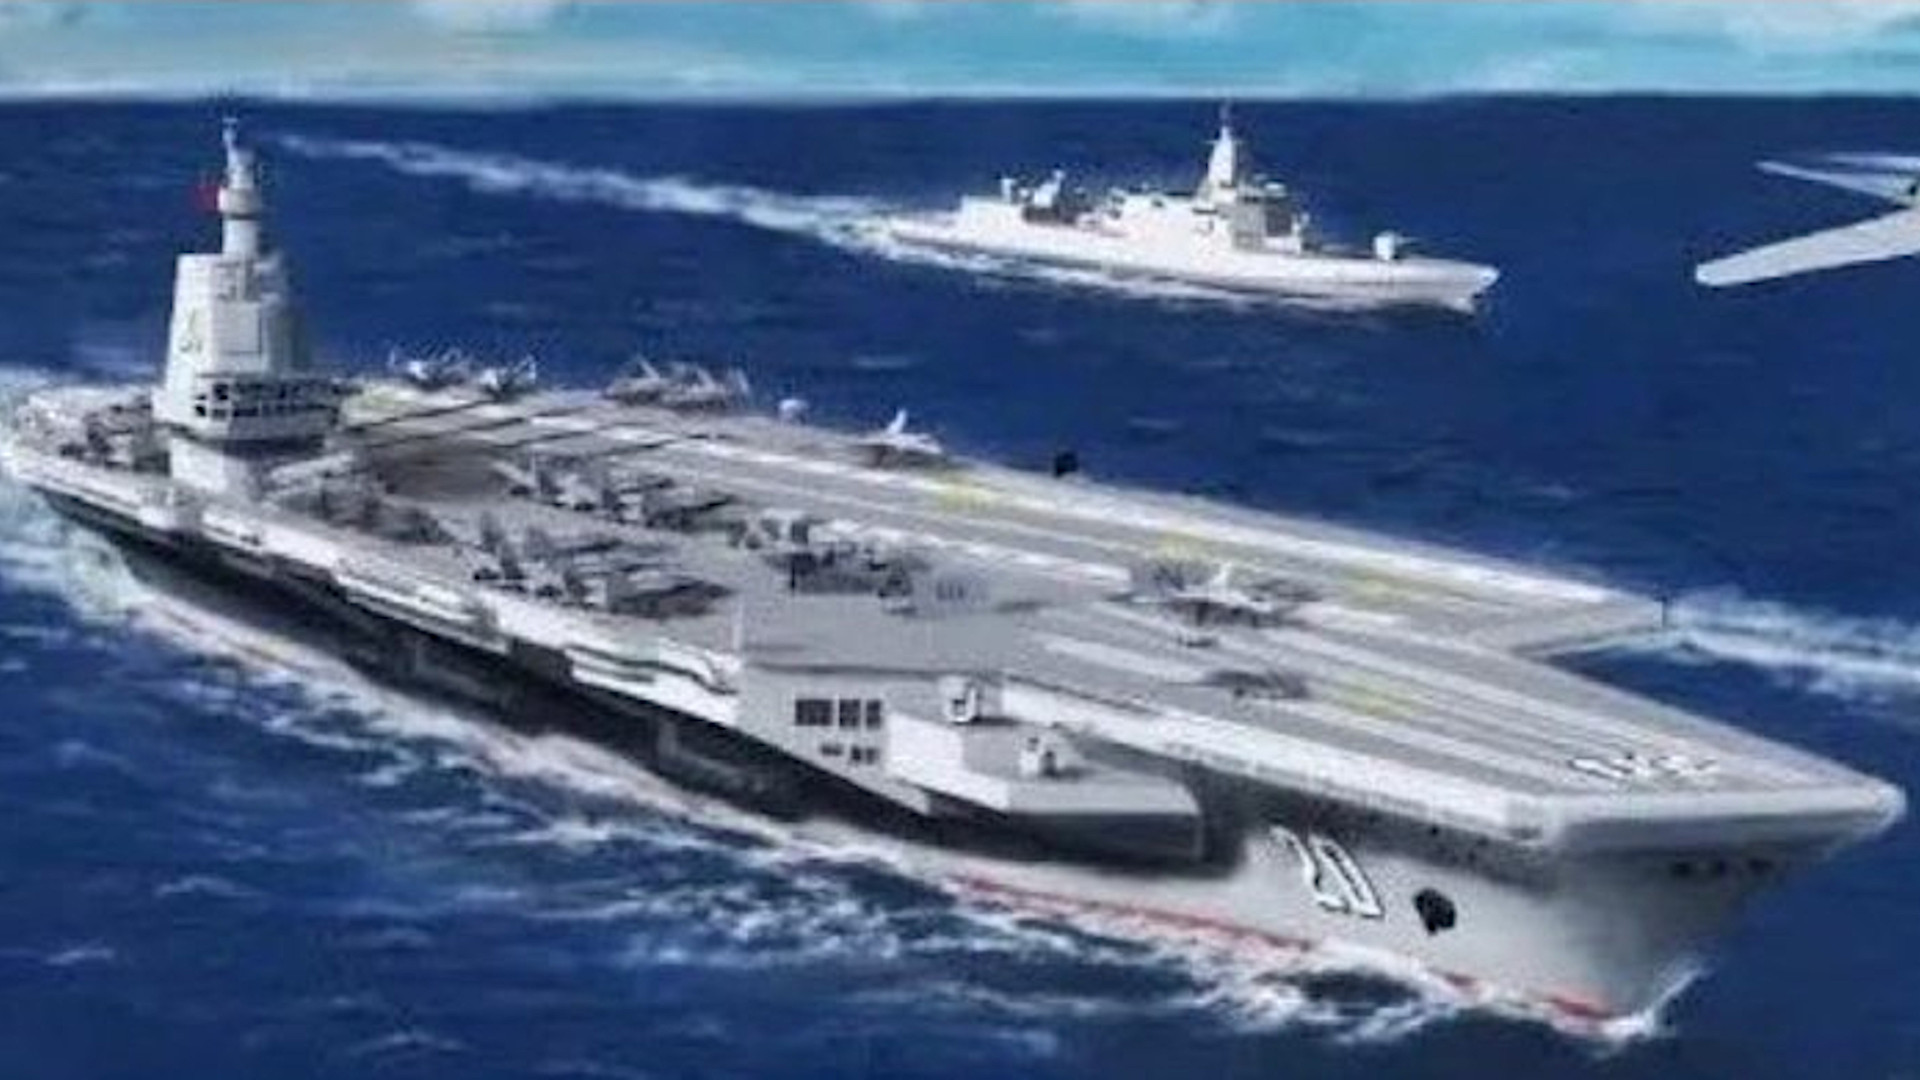 مفهوم الناقل الصيني الجديد يشبه إلى حد كبير فئة فورد التابعة للبحرية الأمريكية